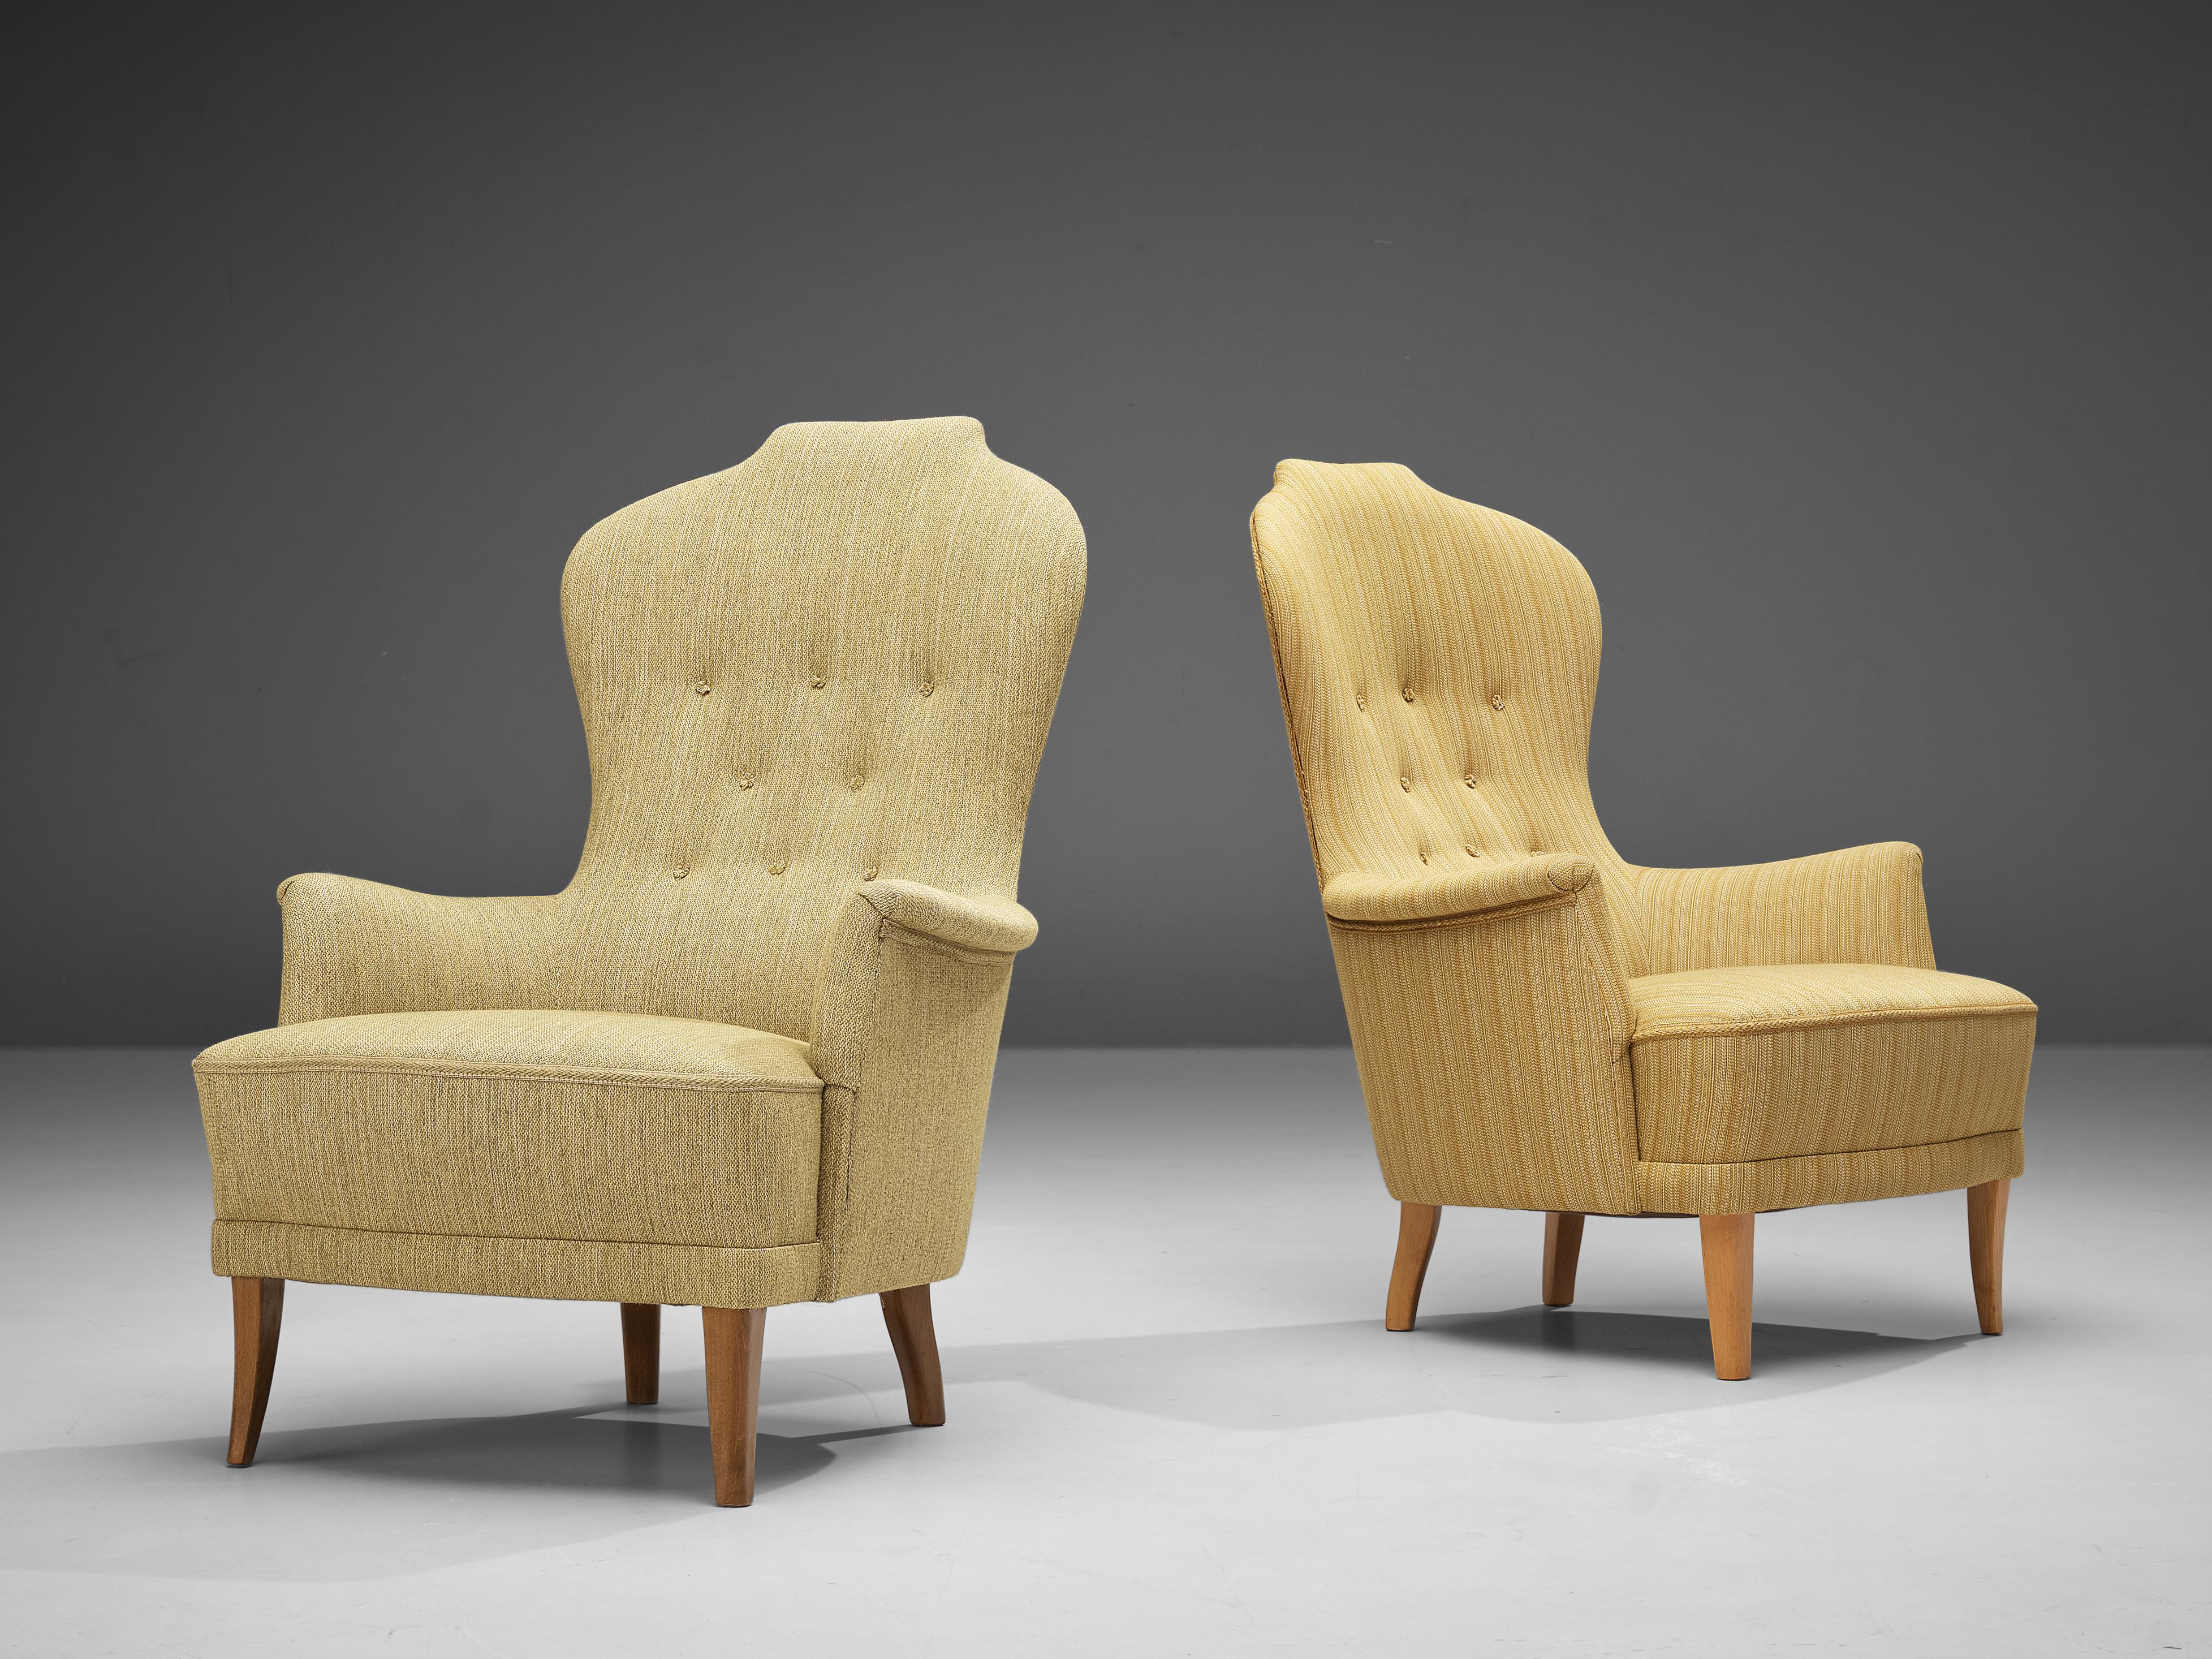 Carl Malmsten pour O. H. Sjögren, chaises longues modèle 'Farmor', tissu bois, Suède, design 1956

Le designer de meubles suédois Carl Malmsten a coopéré dans les années 1950 avec de petites entreprises suédoises qui ont été autorisées à produire